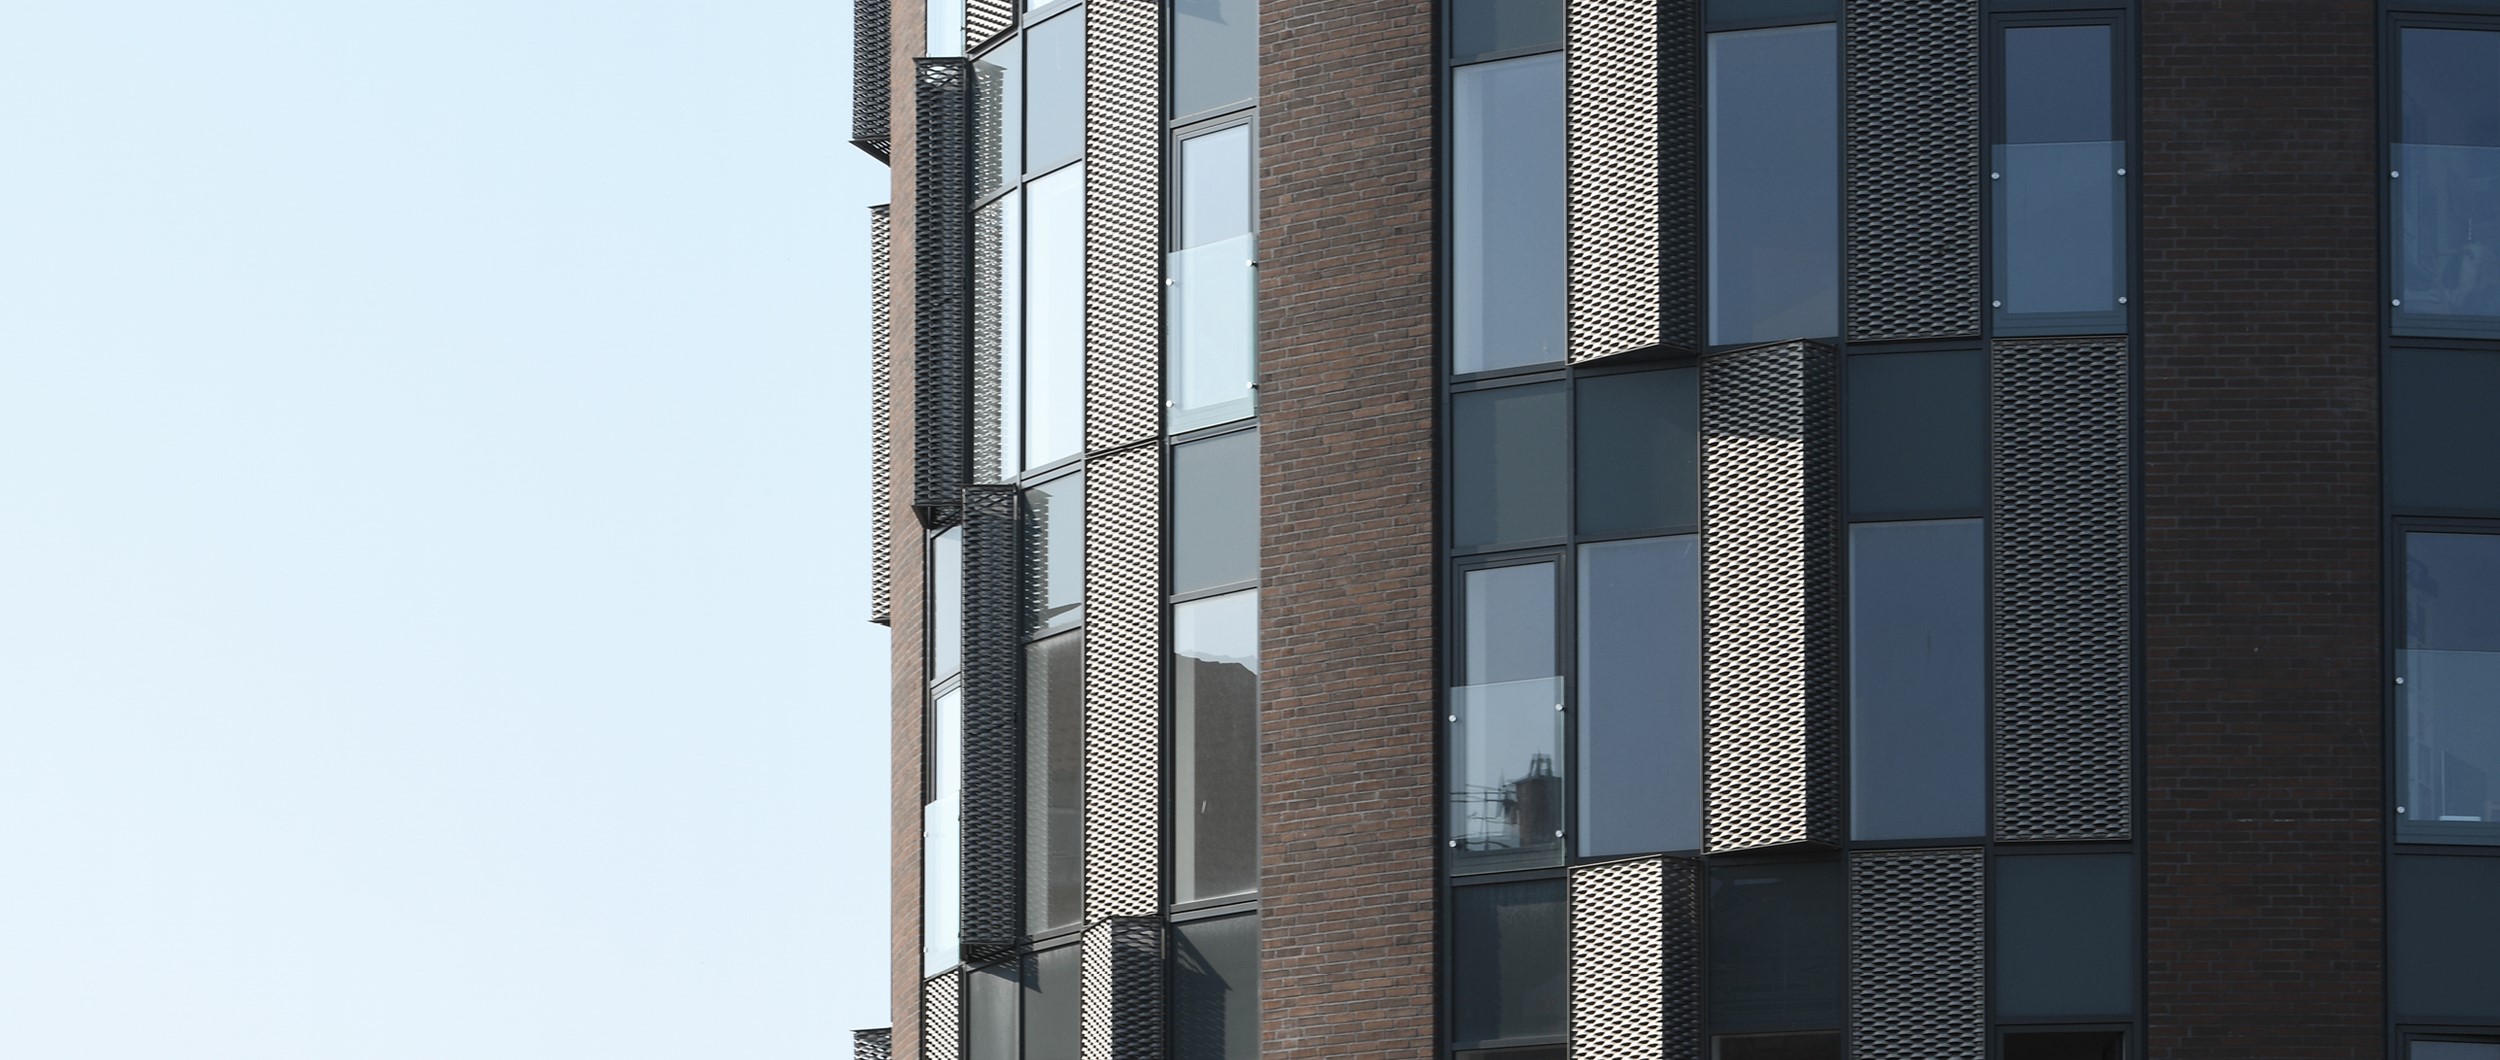 Som et lysende fyrtårn for enden af gågaden bidrager bygningen til en opblomstring af bymidten og understøtter den positive udvikling i Odense.